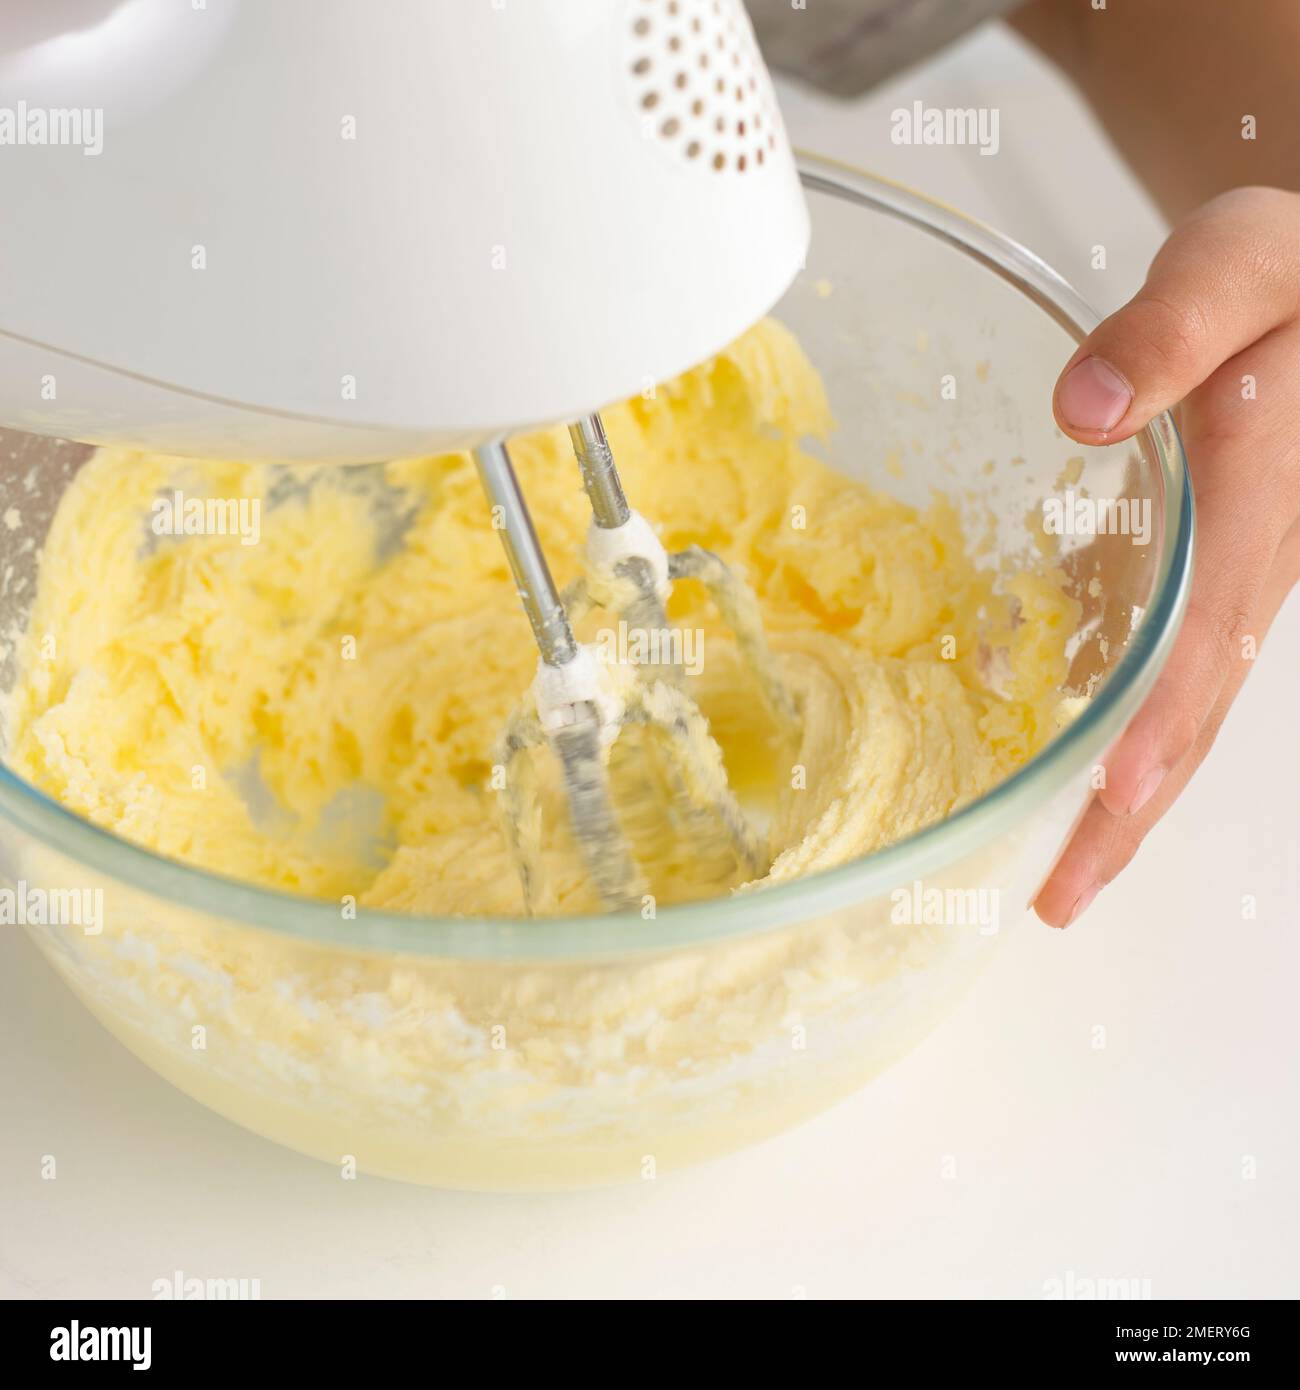 Fabricant d'oeufs-fouet à oeufs Shaker fouet électrique Machine à oeufs d'or  jaune d'oeuf mélangeur blanc Gadgets de cuisine 